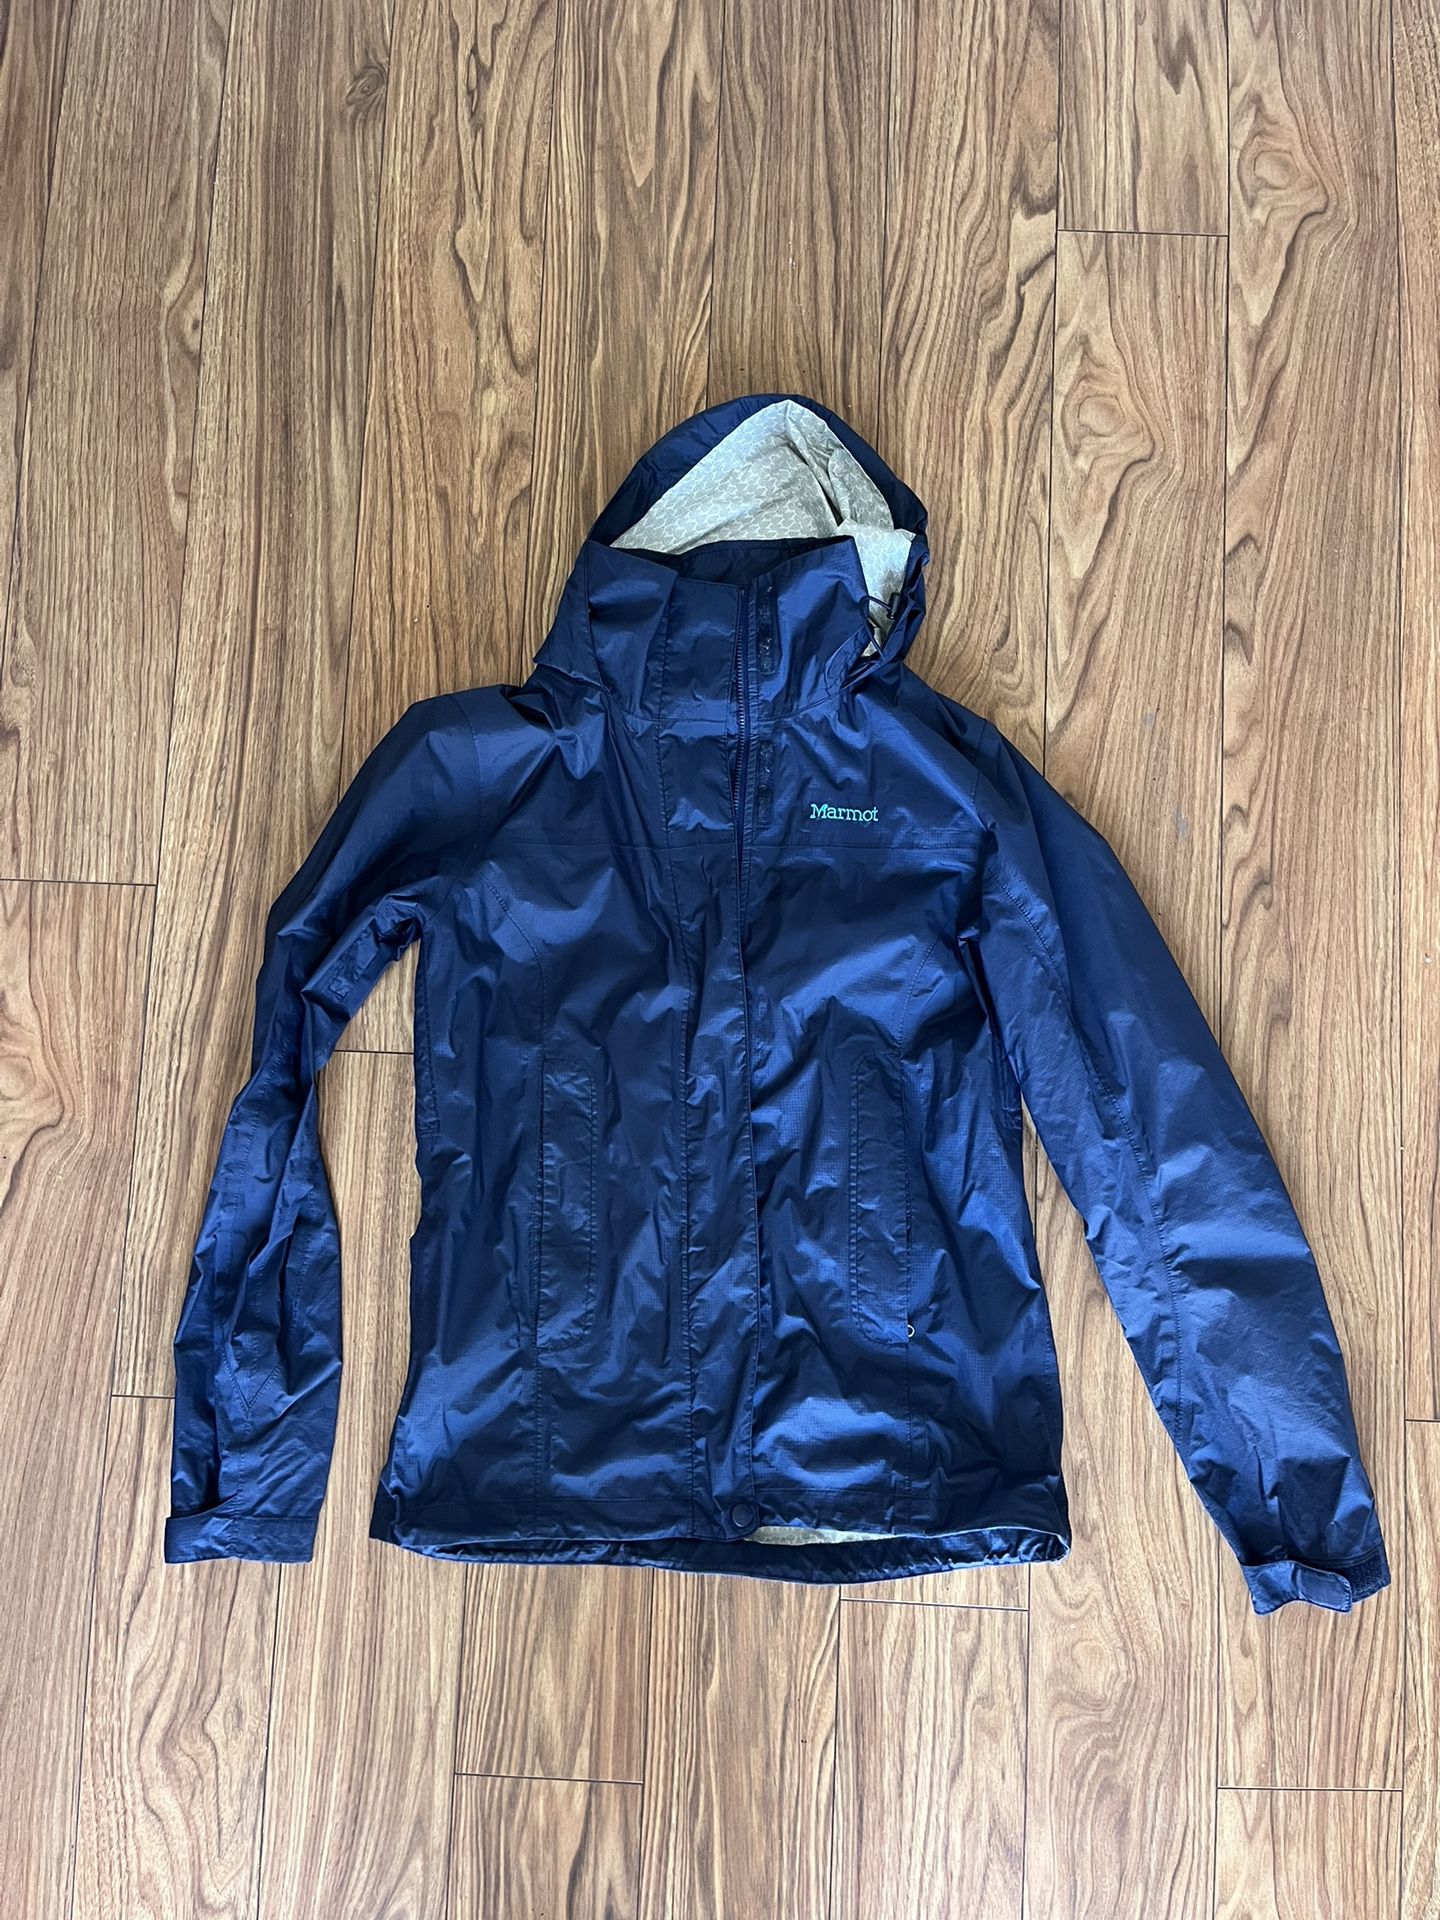 Marmot Rain Jacket, Small, Navy 